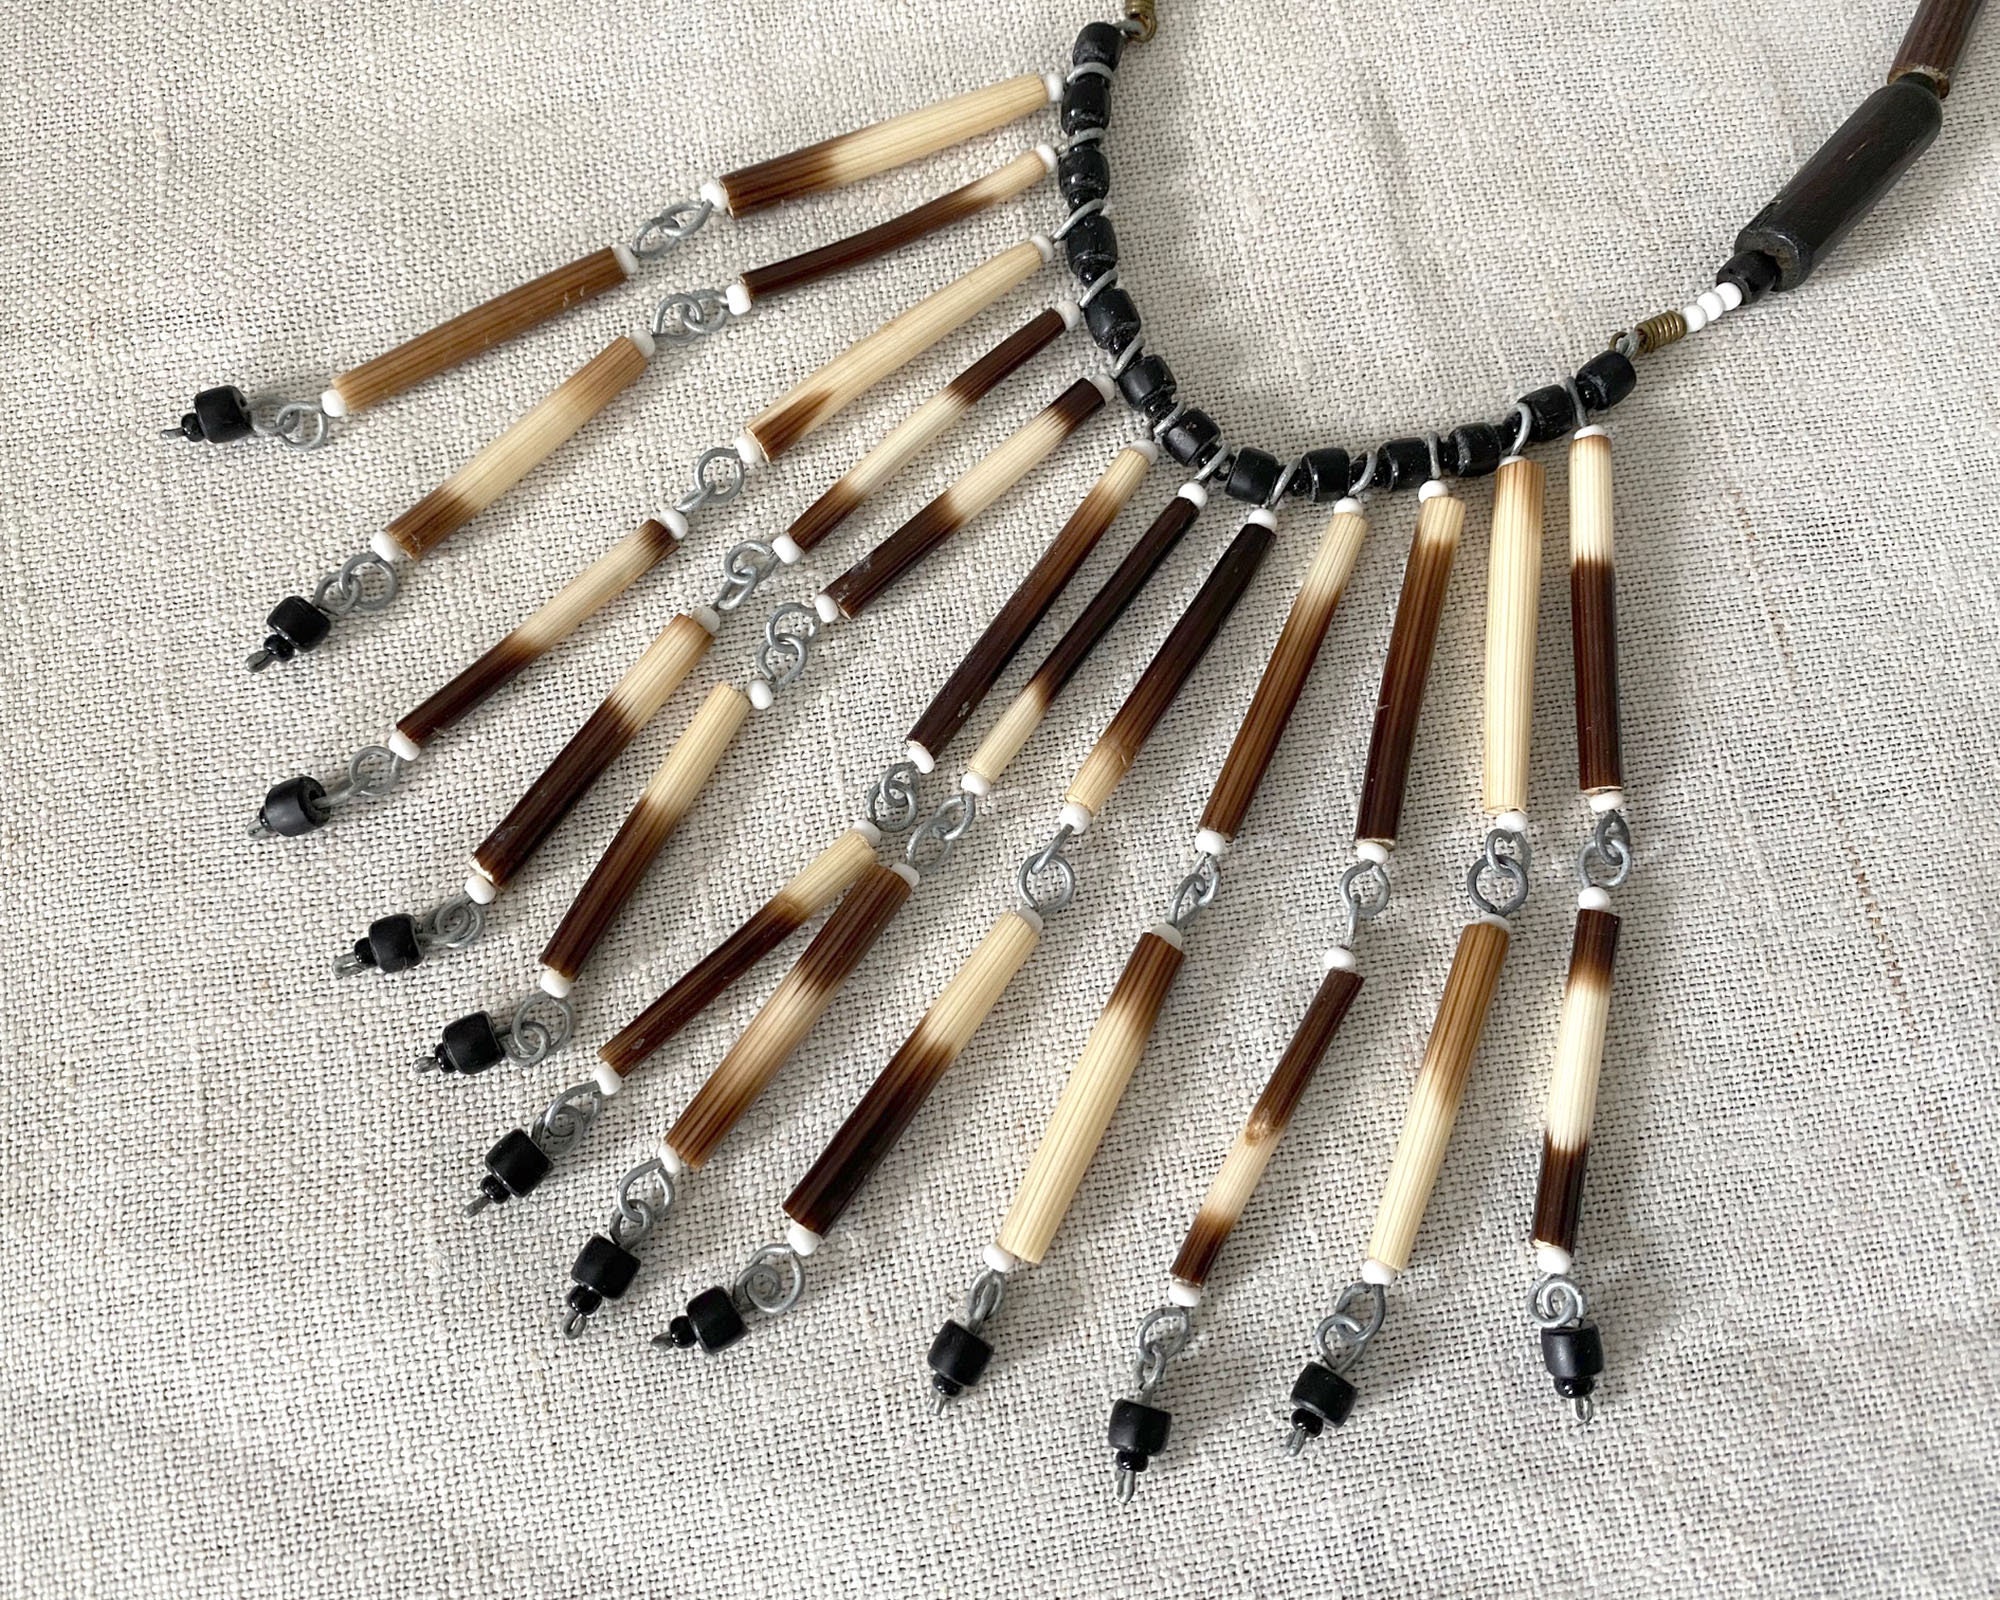 Porcupine quill necklace west - Gem